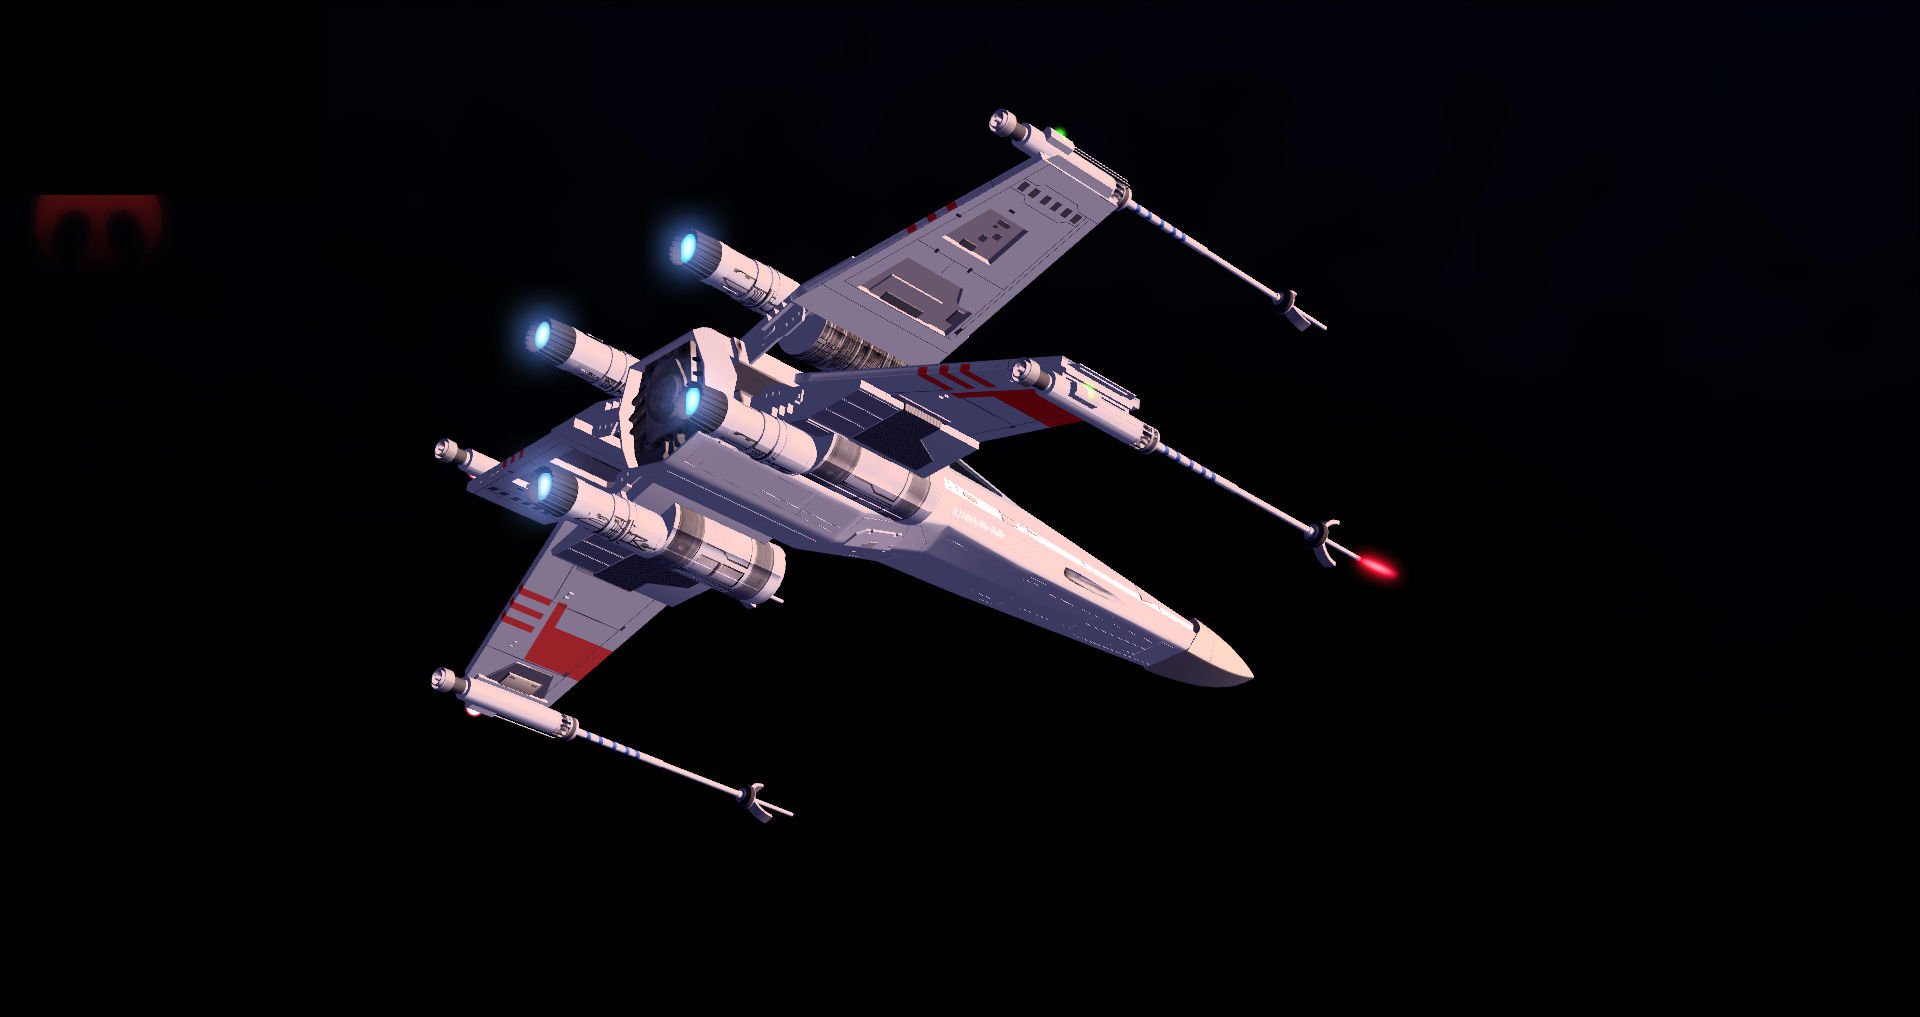 STAR WARS X -WING spaceship futuristic space sci-fi xwing ...